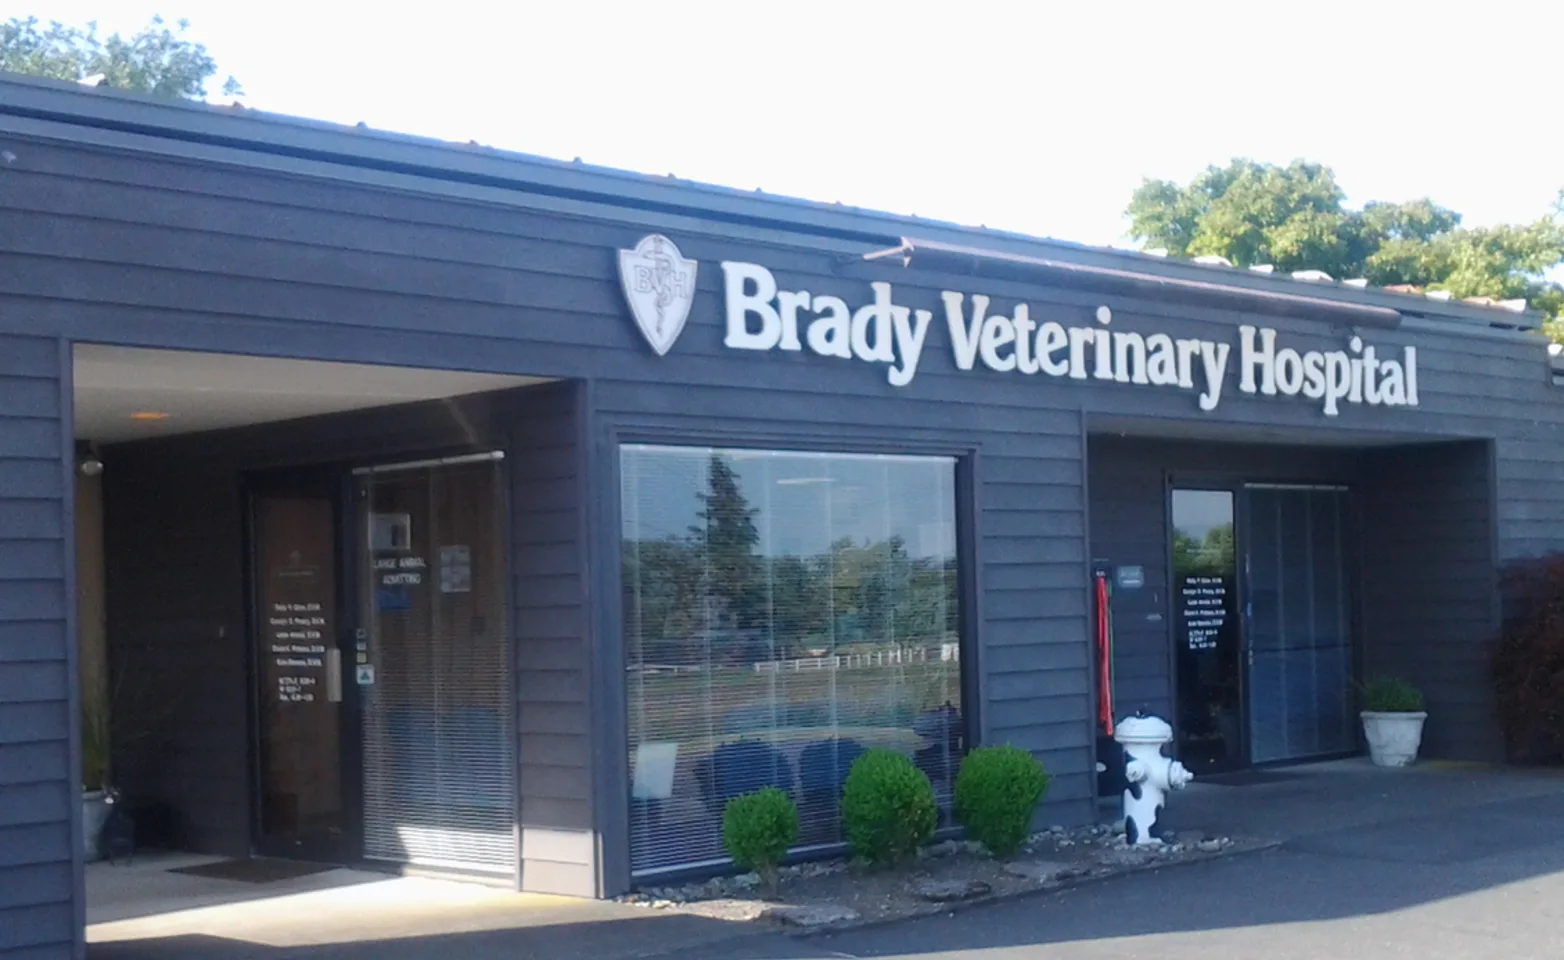 Brady veterinary hospital exterior 